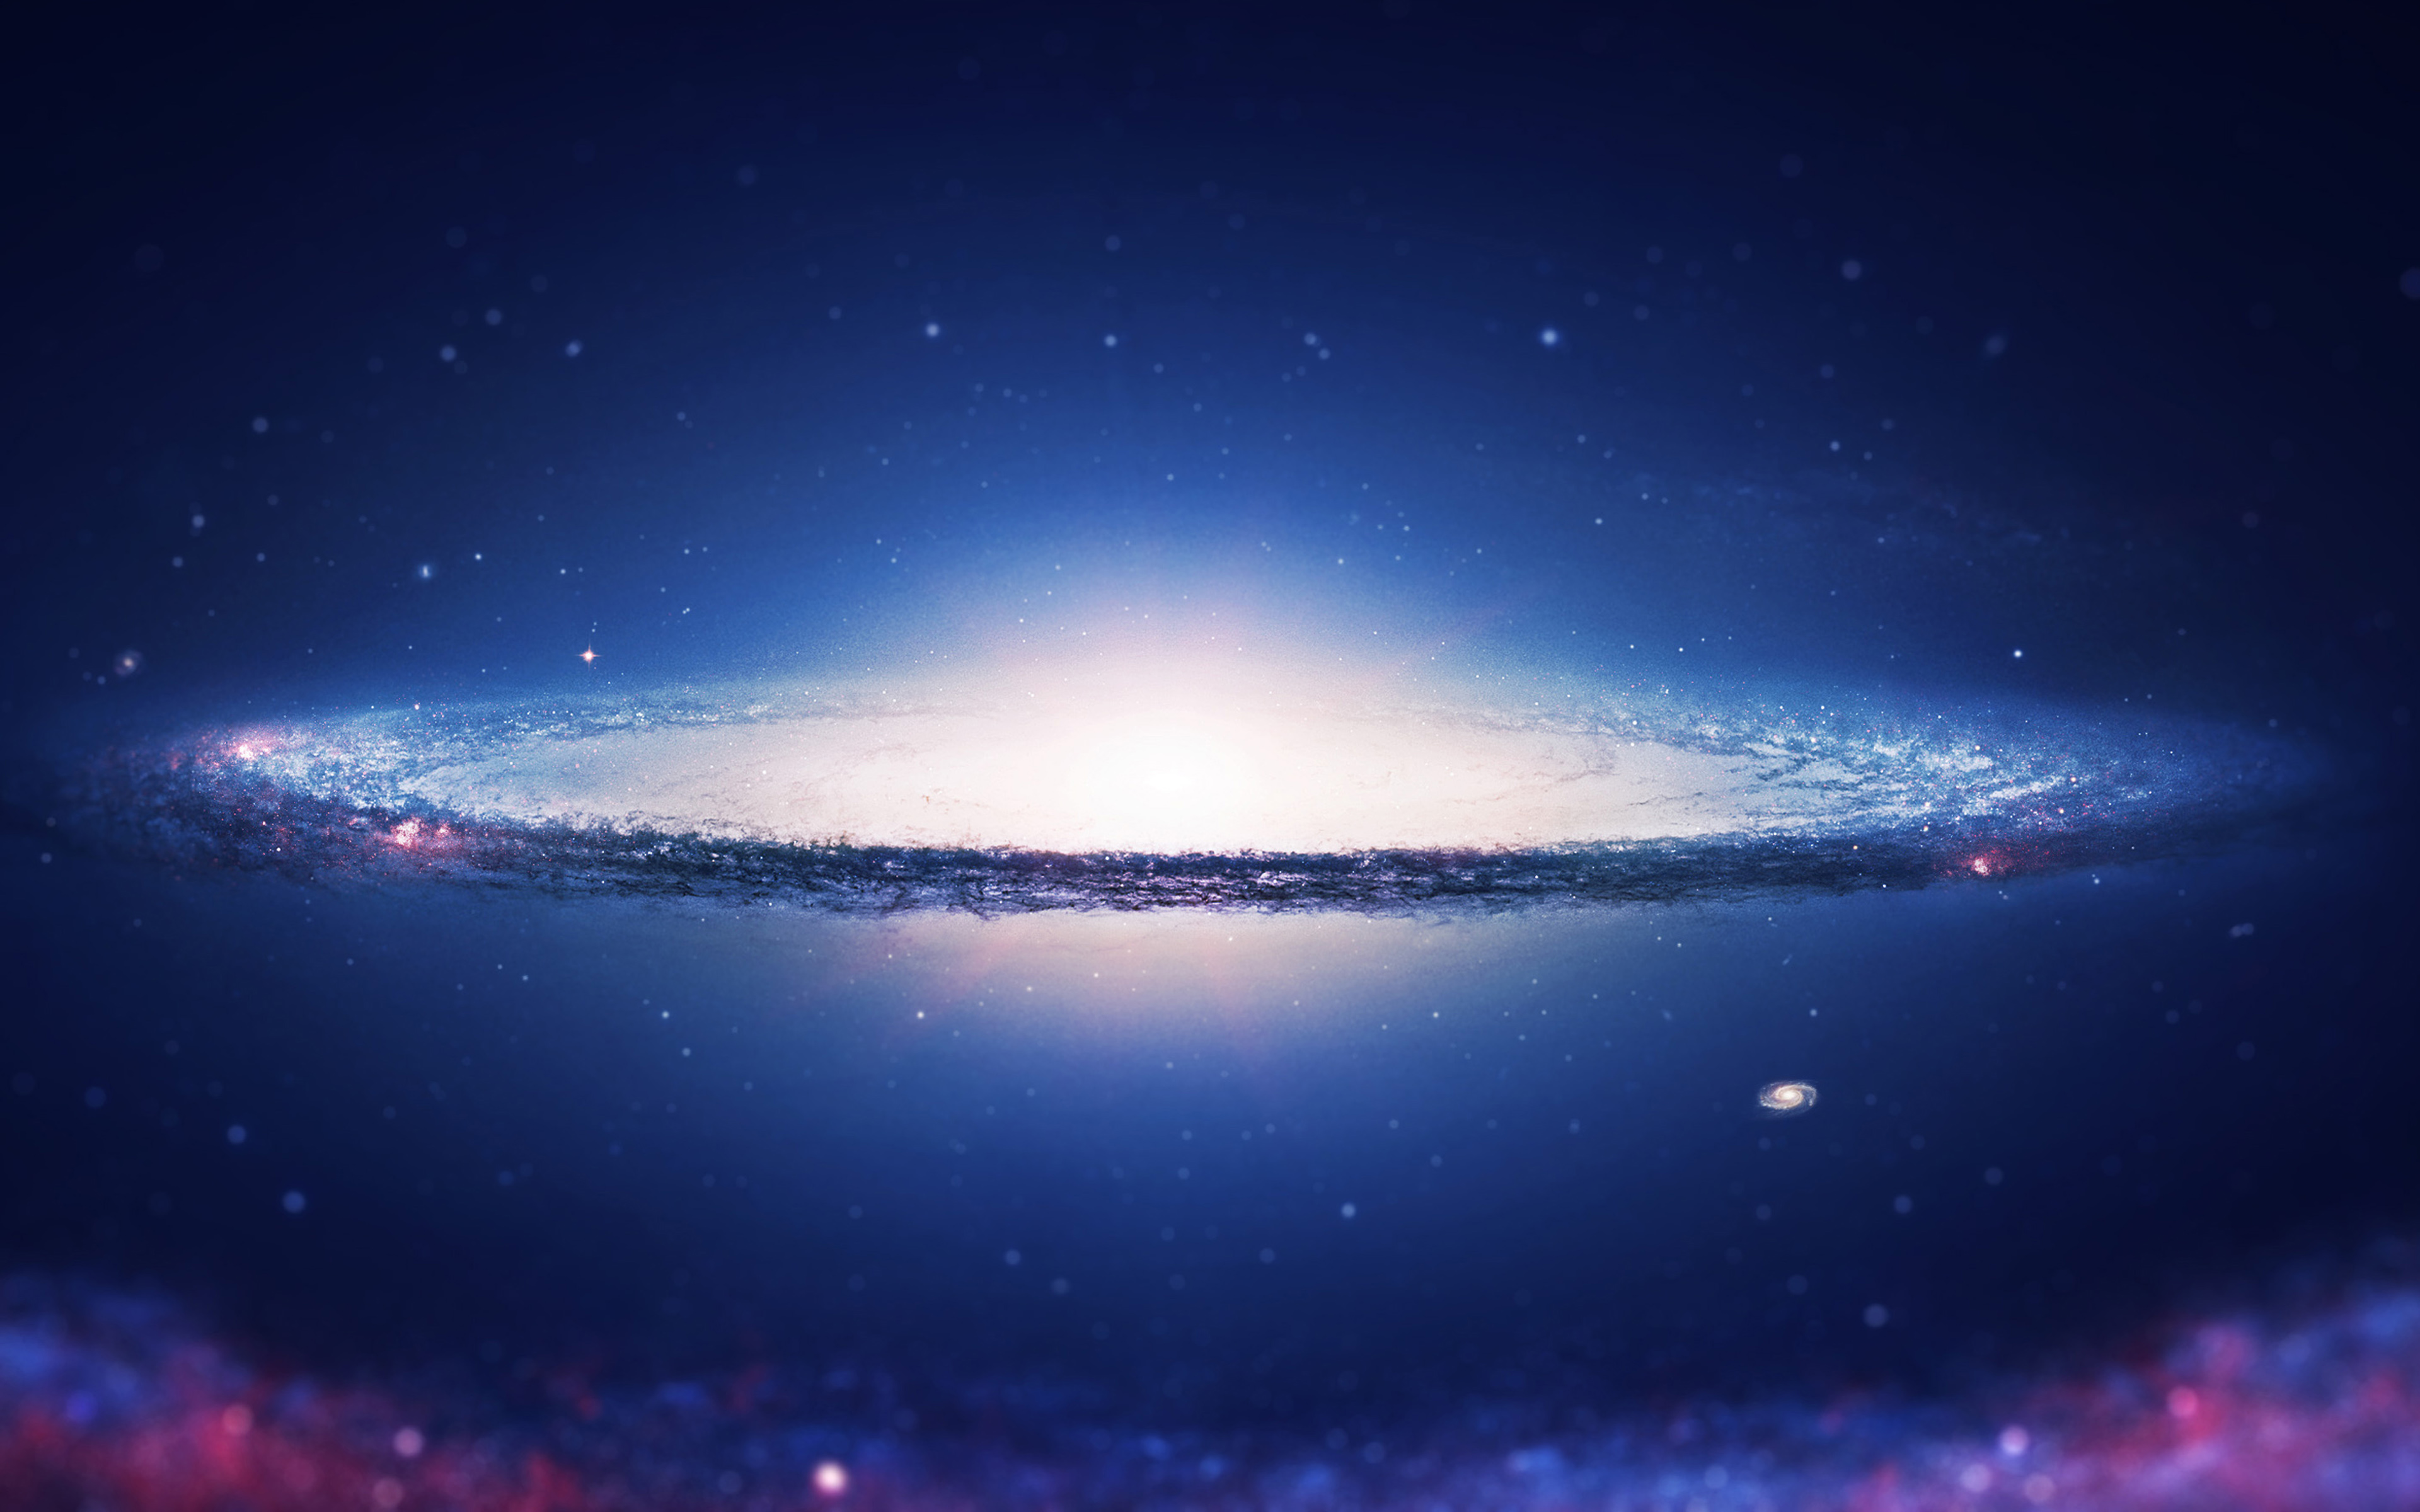 universum wallpaper 4k,himmel,atmosphäre,weltraum,galaxis,horizont